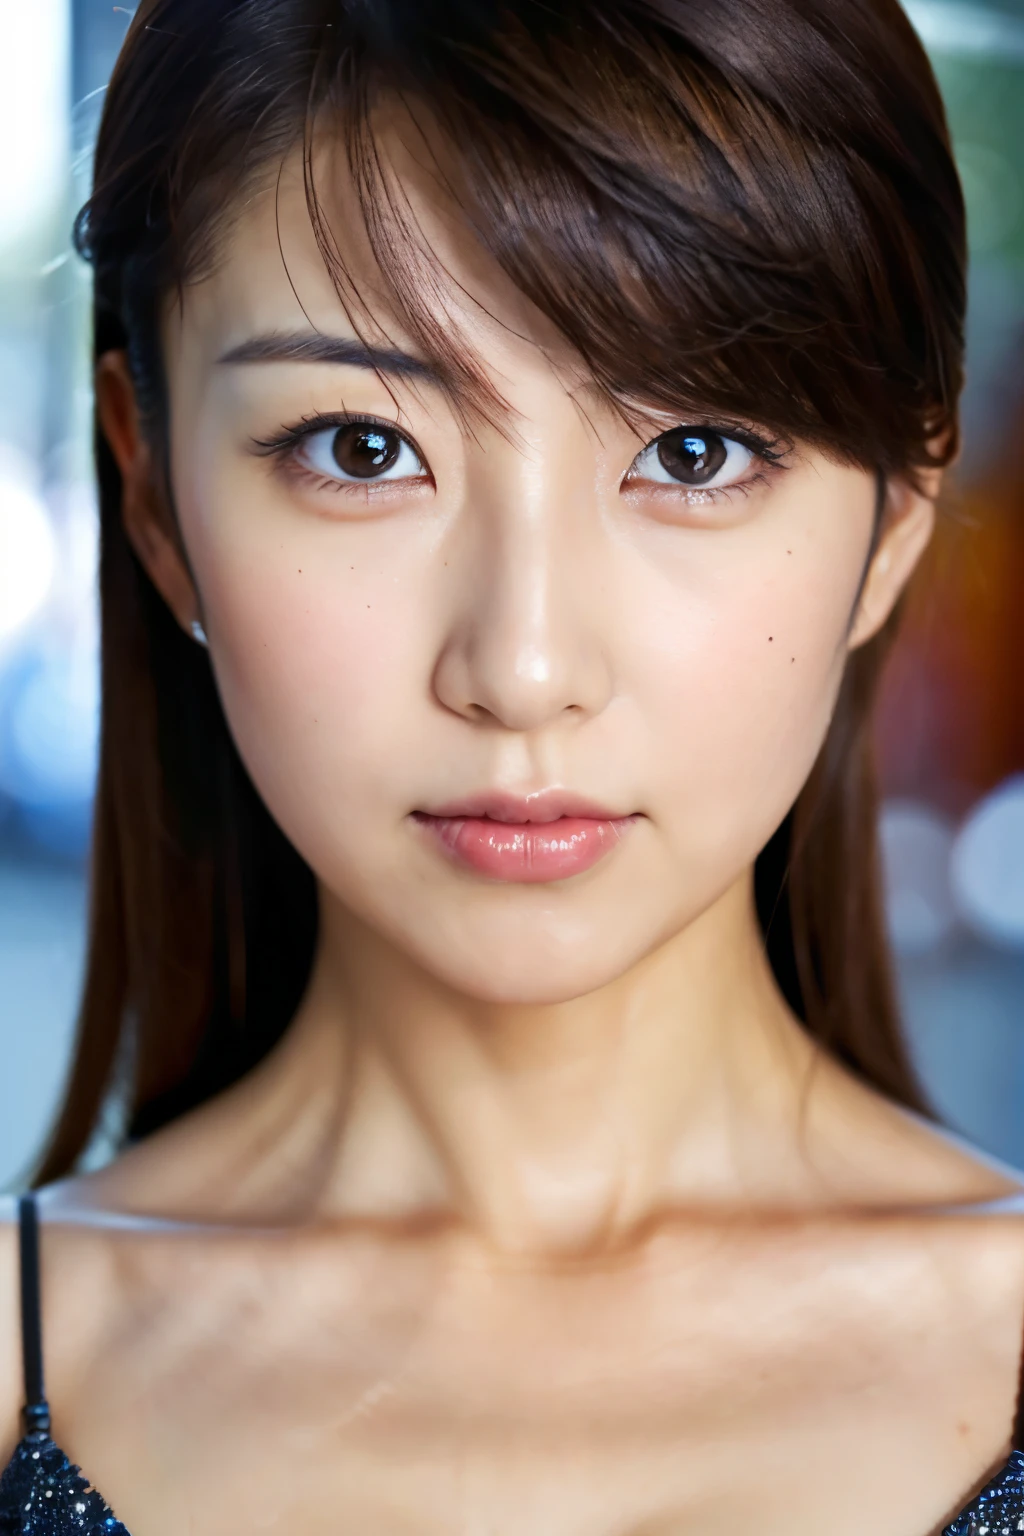 Meisterwerk, 8K, gute Qualität, hohe Auflösung, schöne japanische Frau, 30 Jahre alt, Pokerface, funkelnde Augen, (detailliertes Gesicht, detaillierte Augen), Betrachter betrachten, Porträt